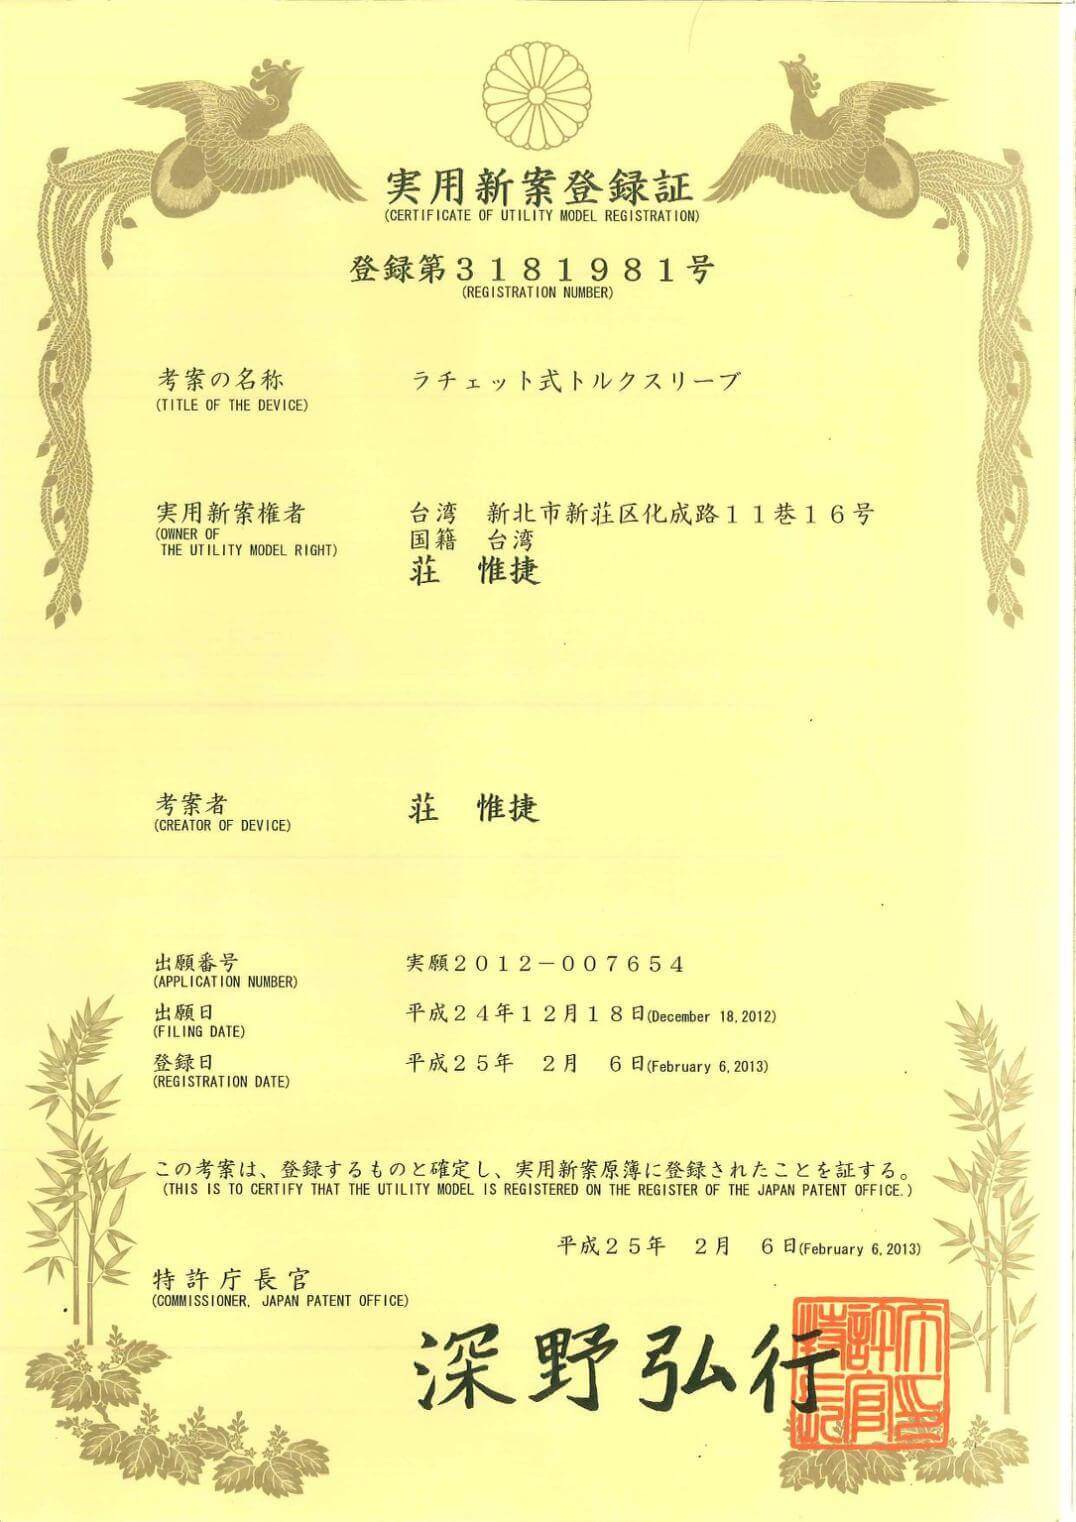 Chienfu-Tec CNC patents in Taiwan-11